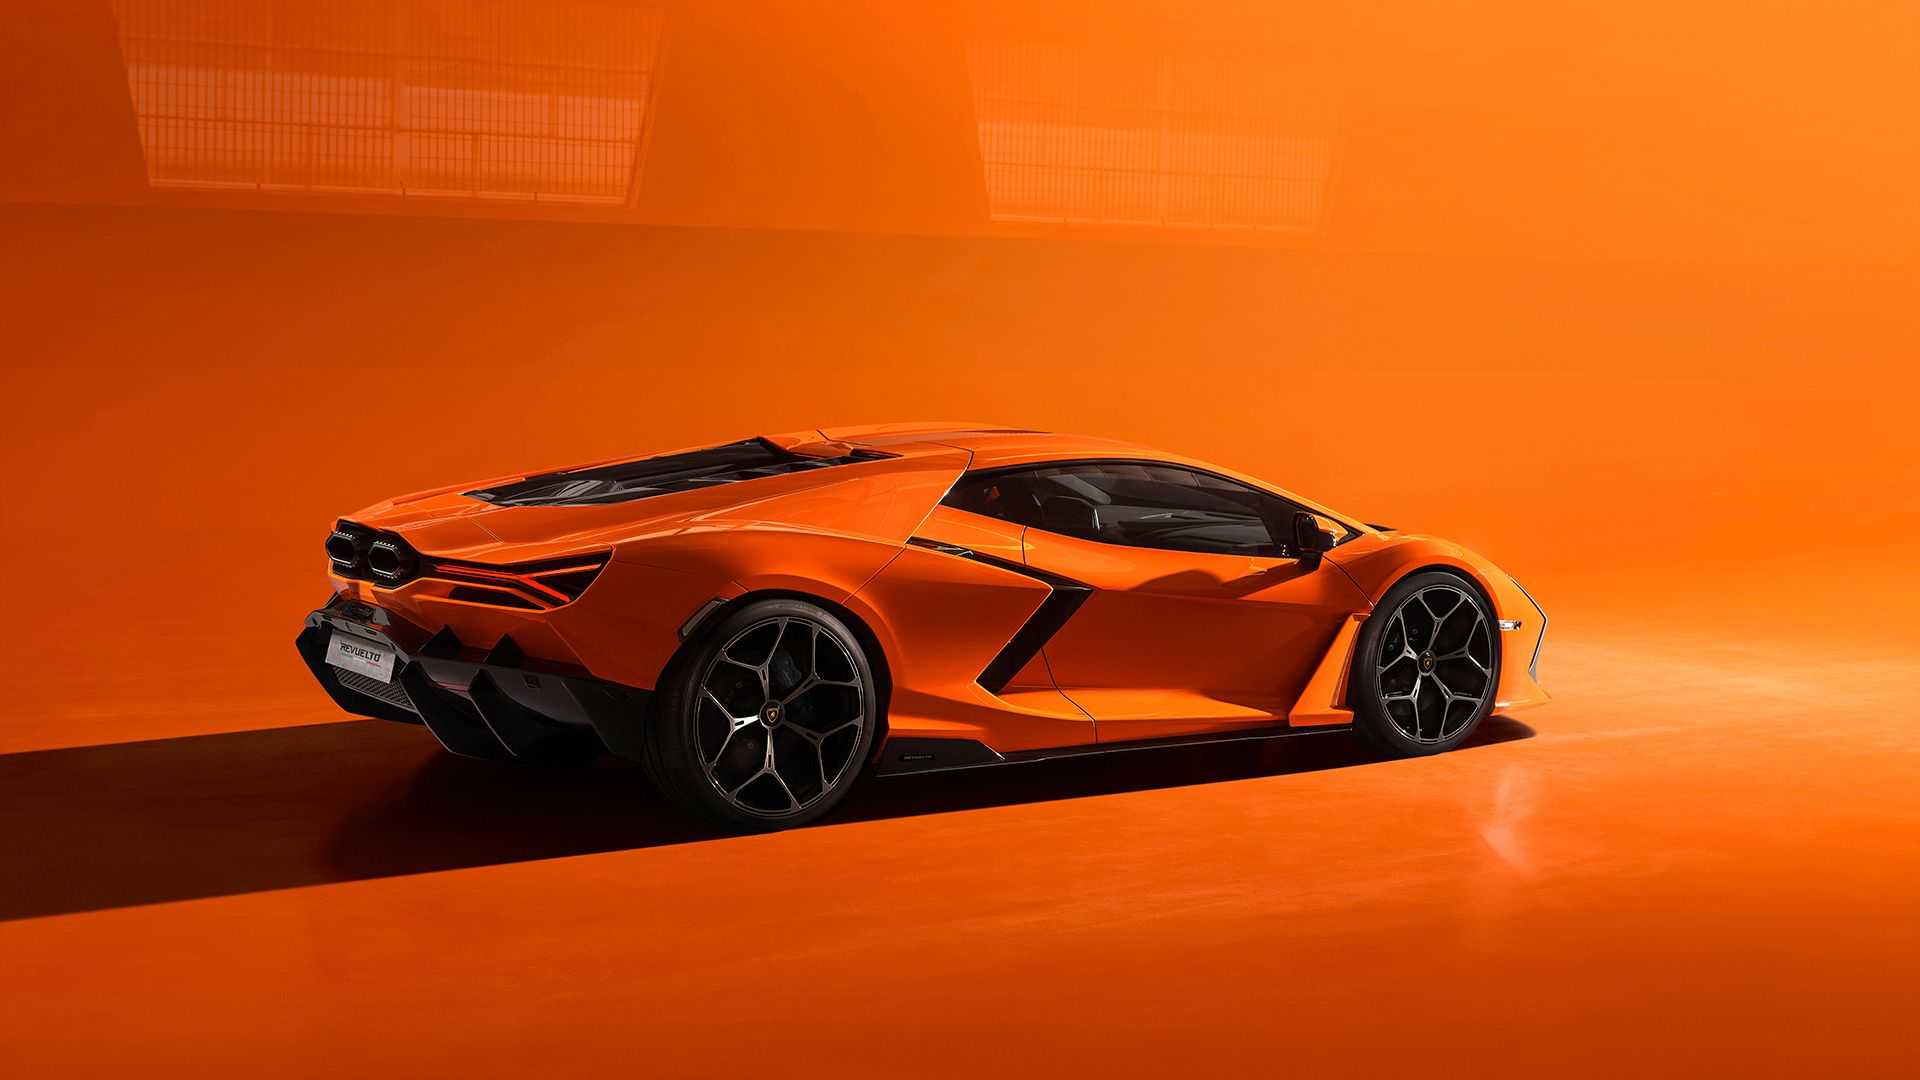 Ra mắt Lamborghini Revuelto thế chỗ Aventador: Siêu xe mạnh nhất lịch sử hãng nhưng đi phố chỉ ngang cơ Civic - ảnh 8